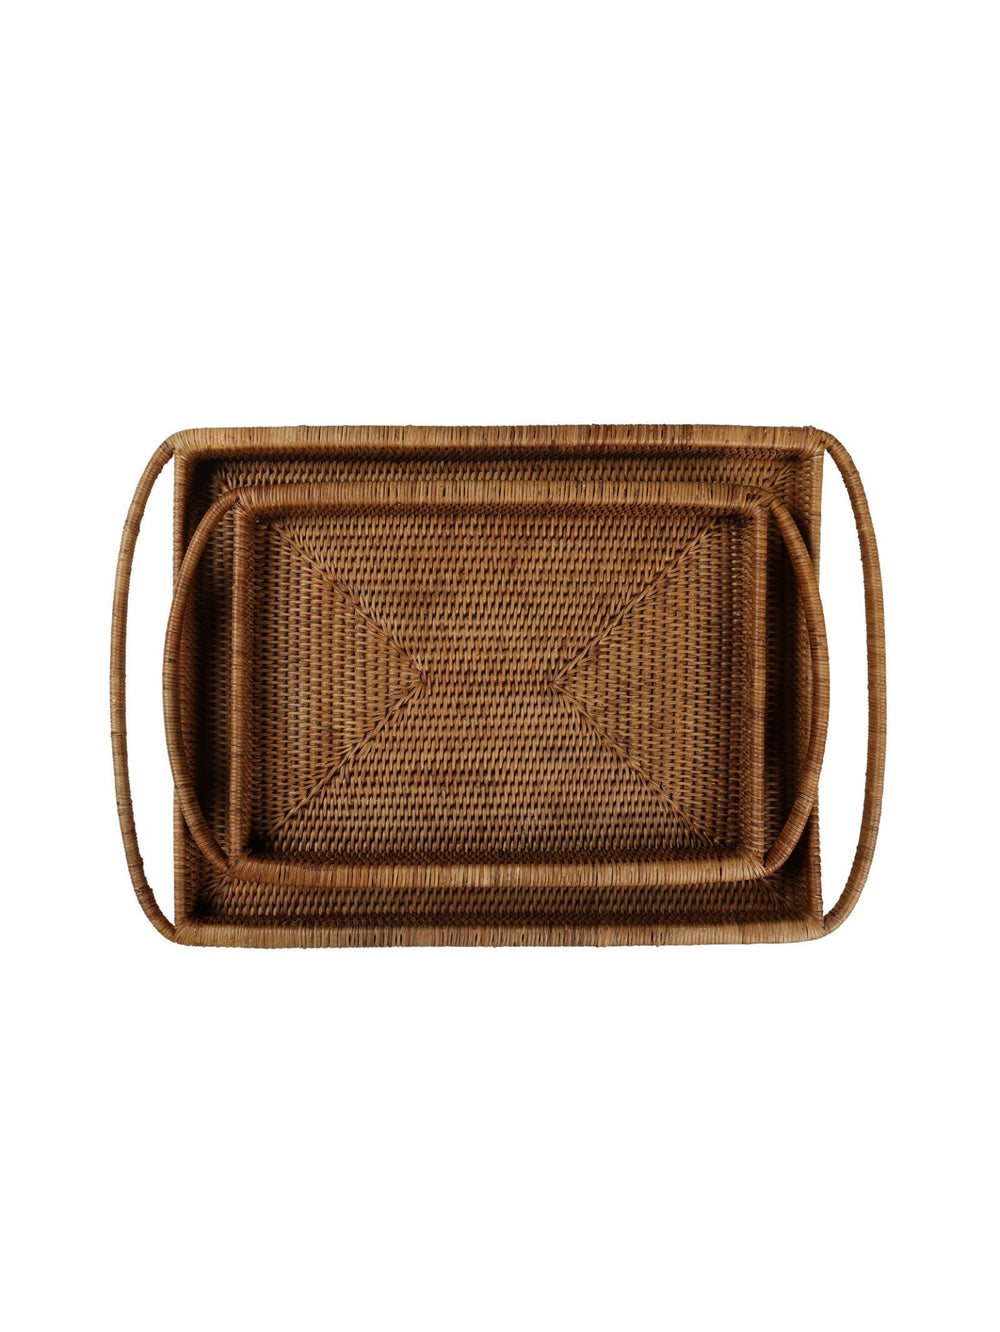 Tamarin Rectangular Tray in Naturelle - tray - Hertex Haus - badge_handmade